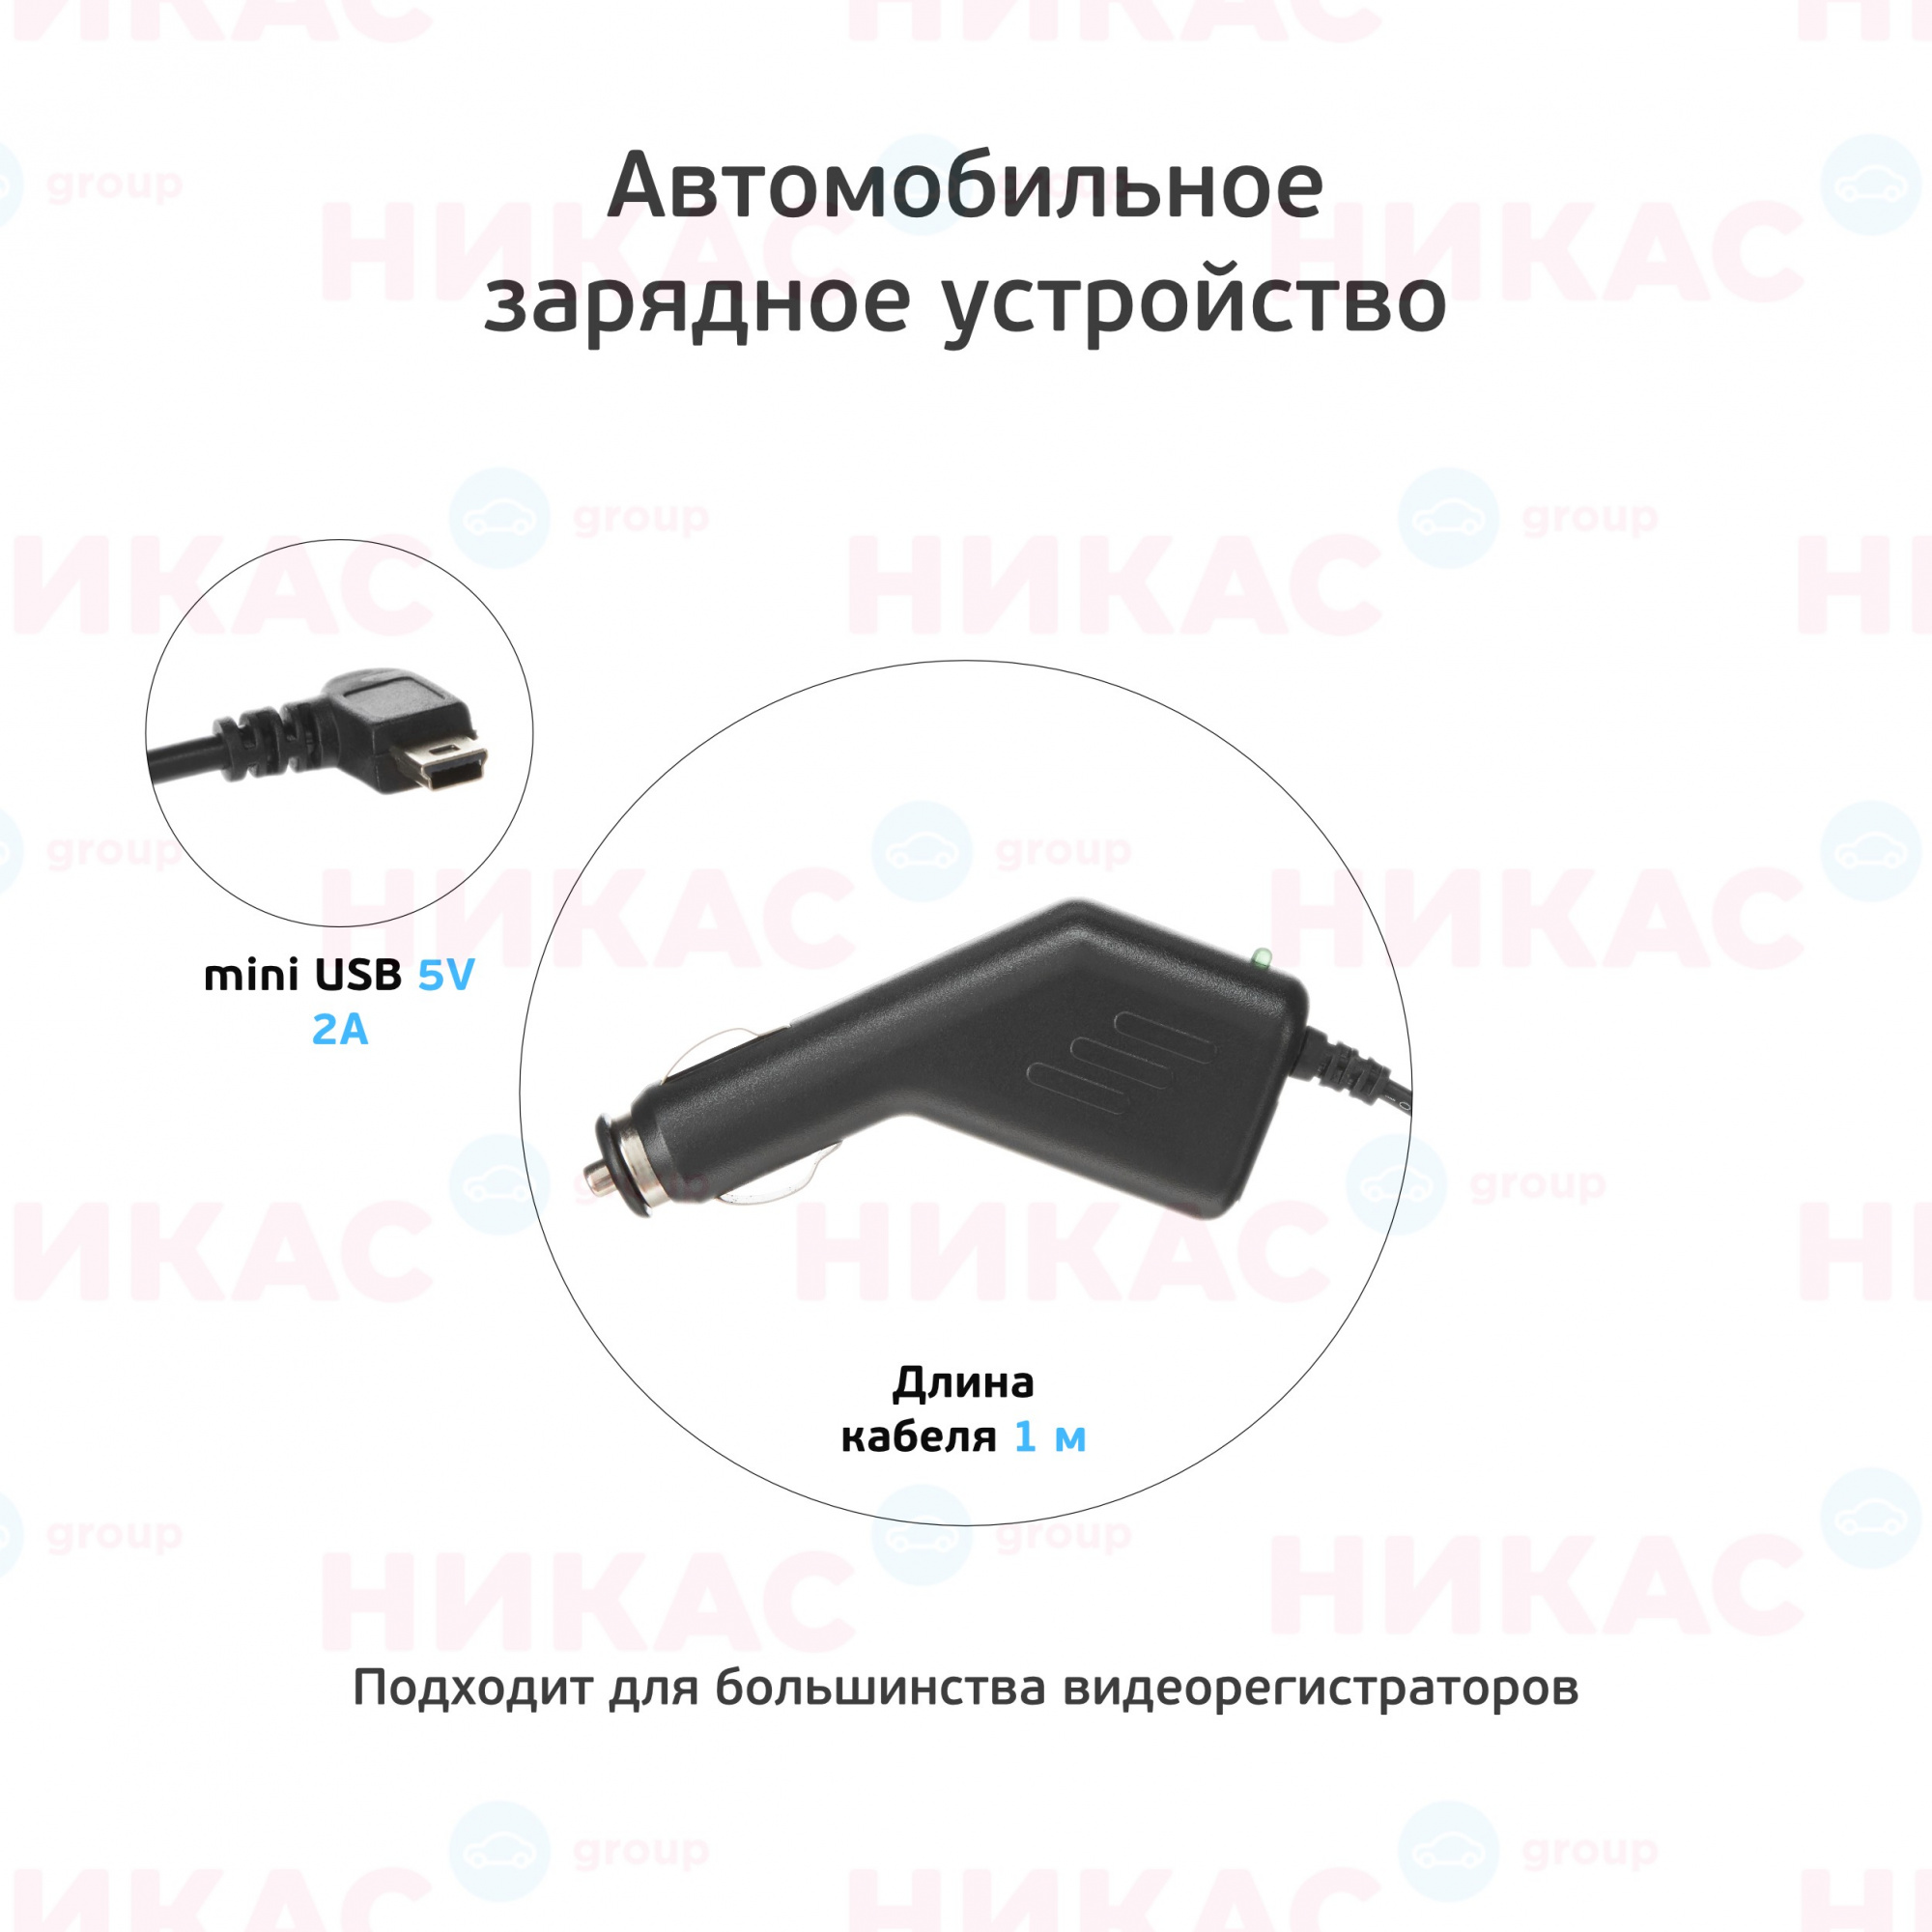 АЗУ mini USB 2A провод неразъемный (подходит для навигаторов) черный